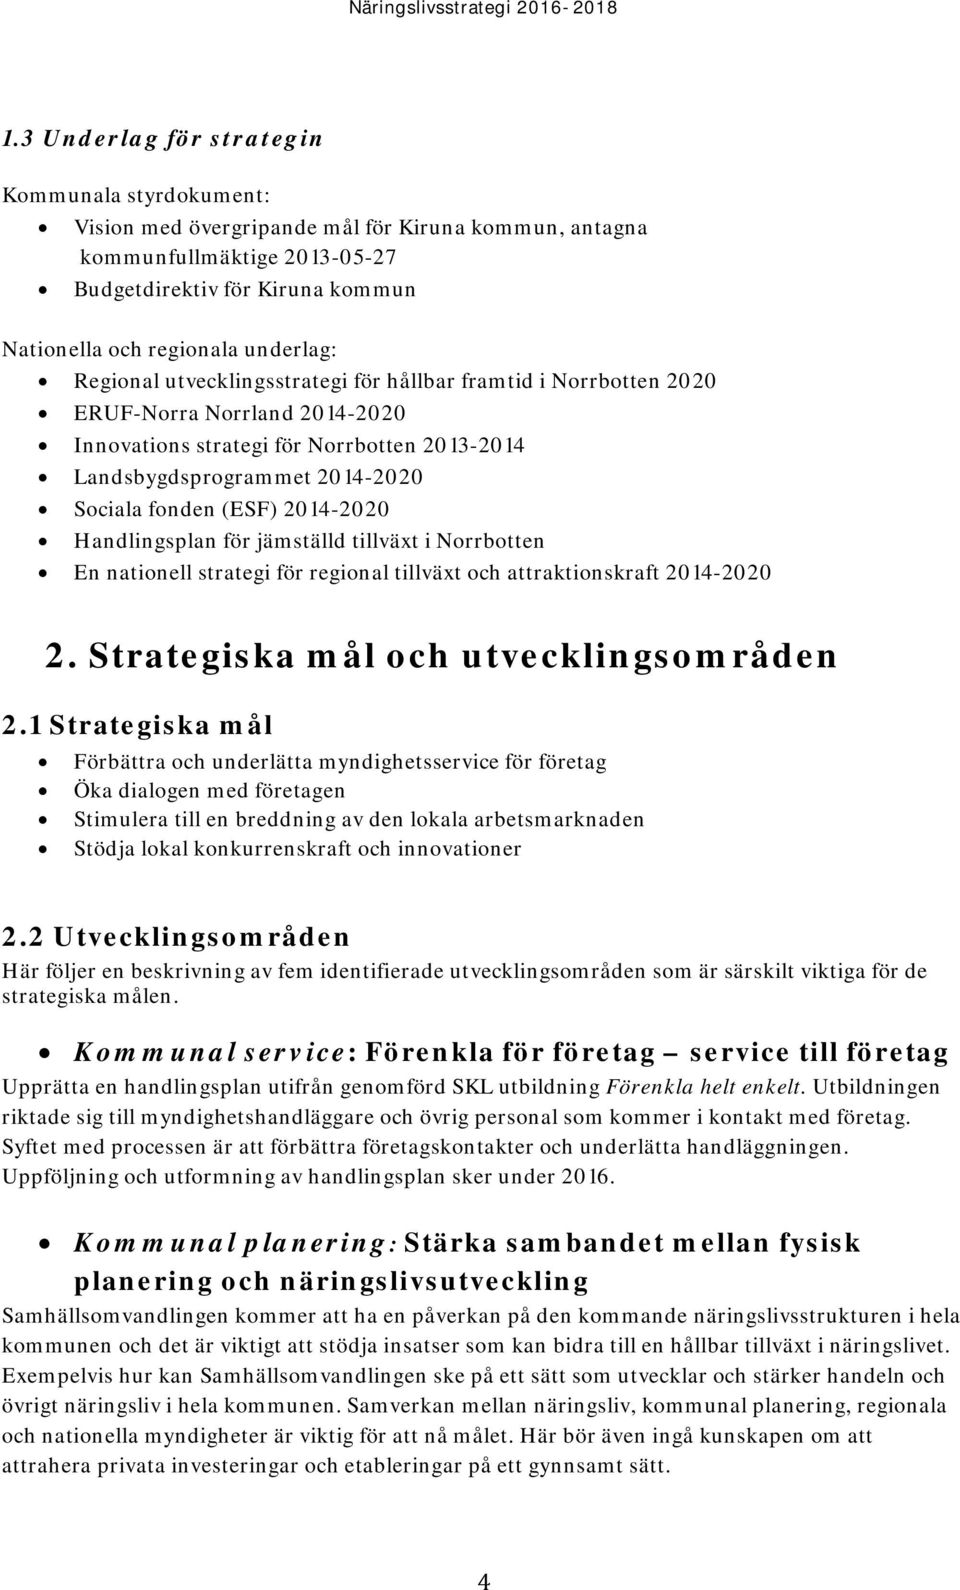 (ESF) 2014-2020 Handlingsplan för jämställd tillväxt i Norrbotten En nationell strategi för regional tillväxt och attraktionskraft 2014-2020 2. Strategiska mål och utvecklingsområden 2.